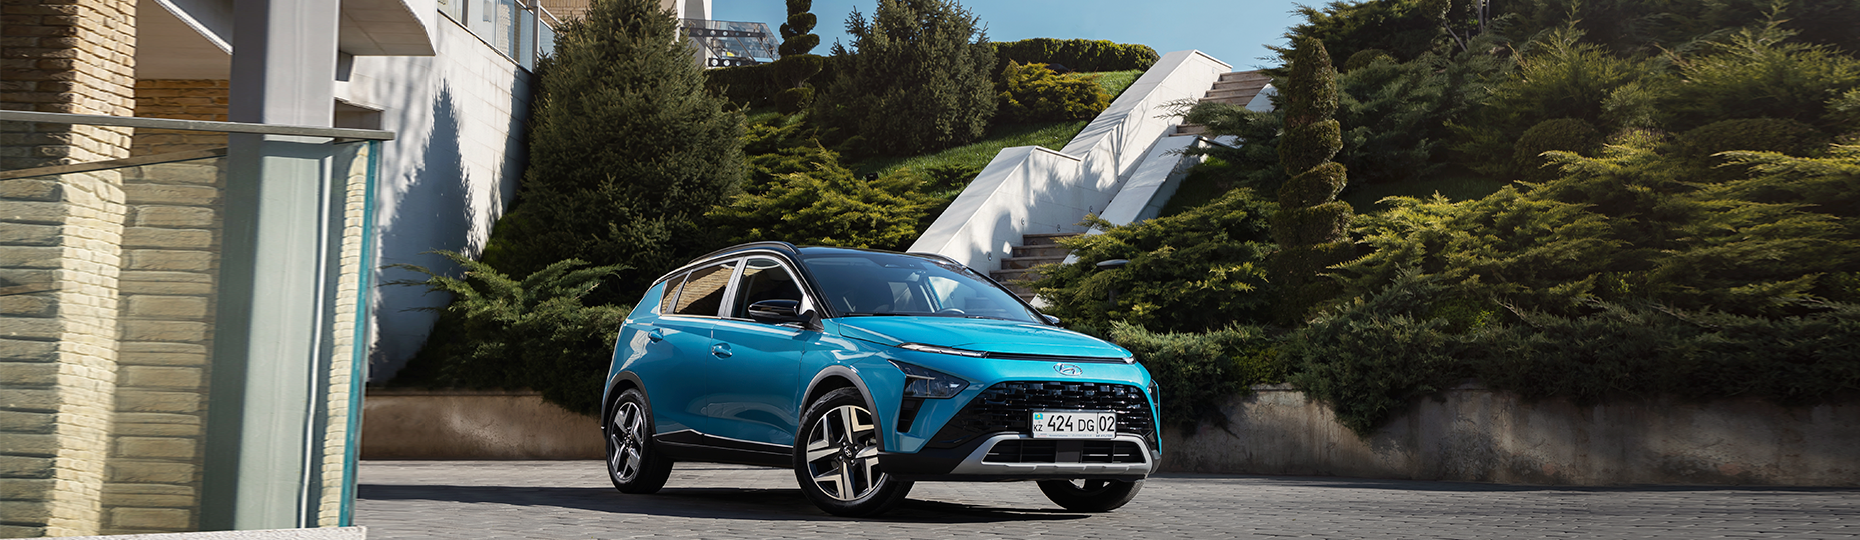 Комфорт нового Hyundai Bayon | Официальный дилер в Шымкенте